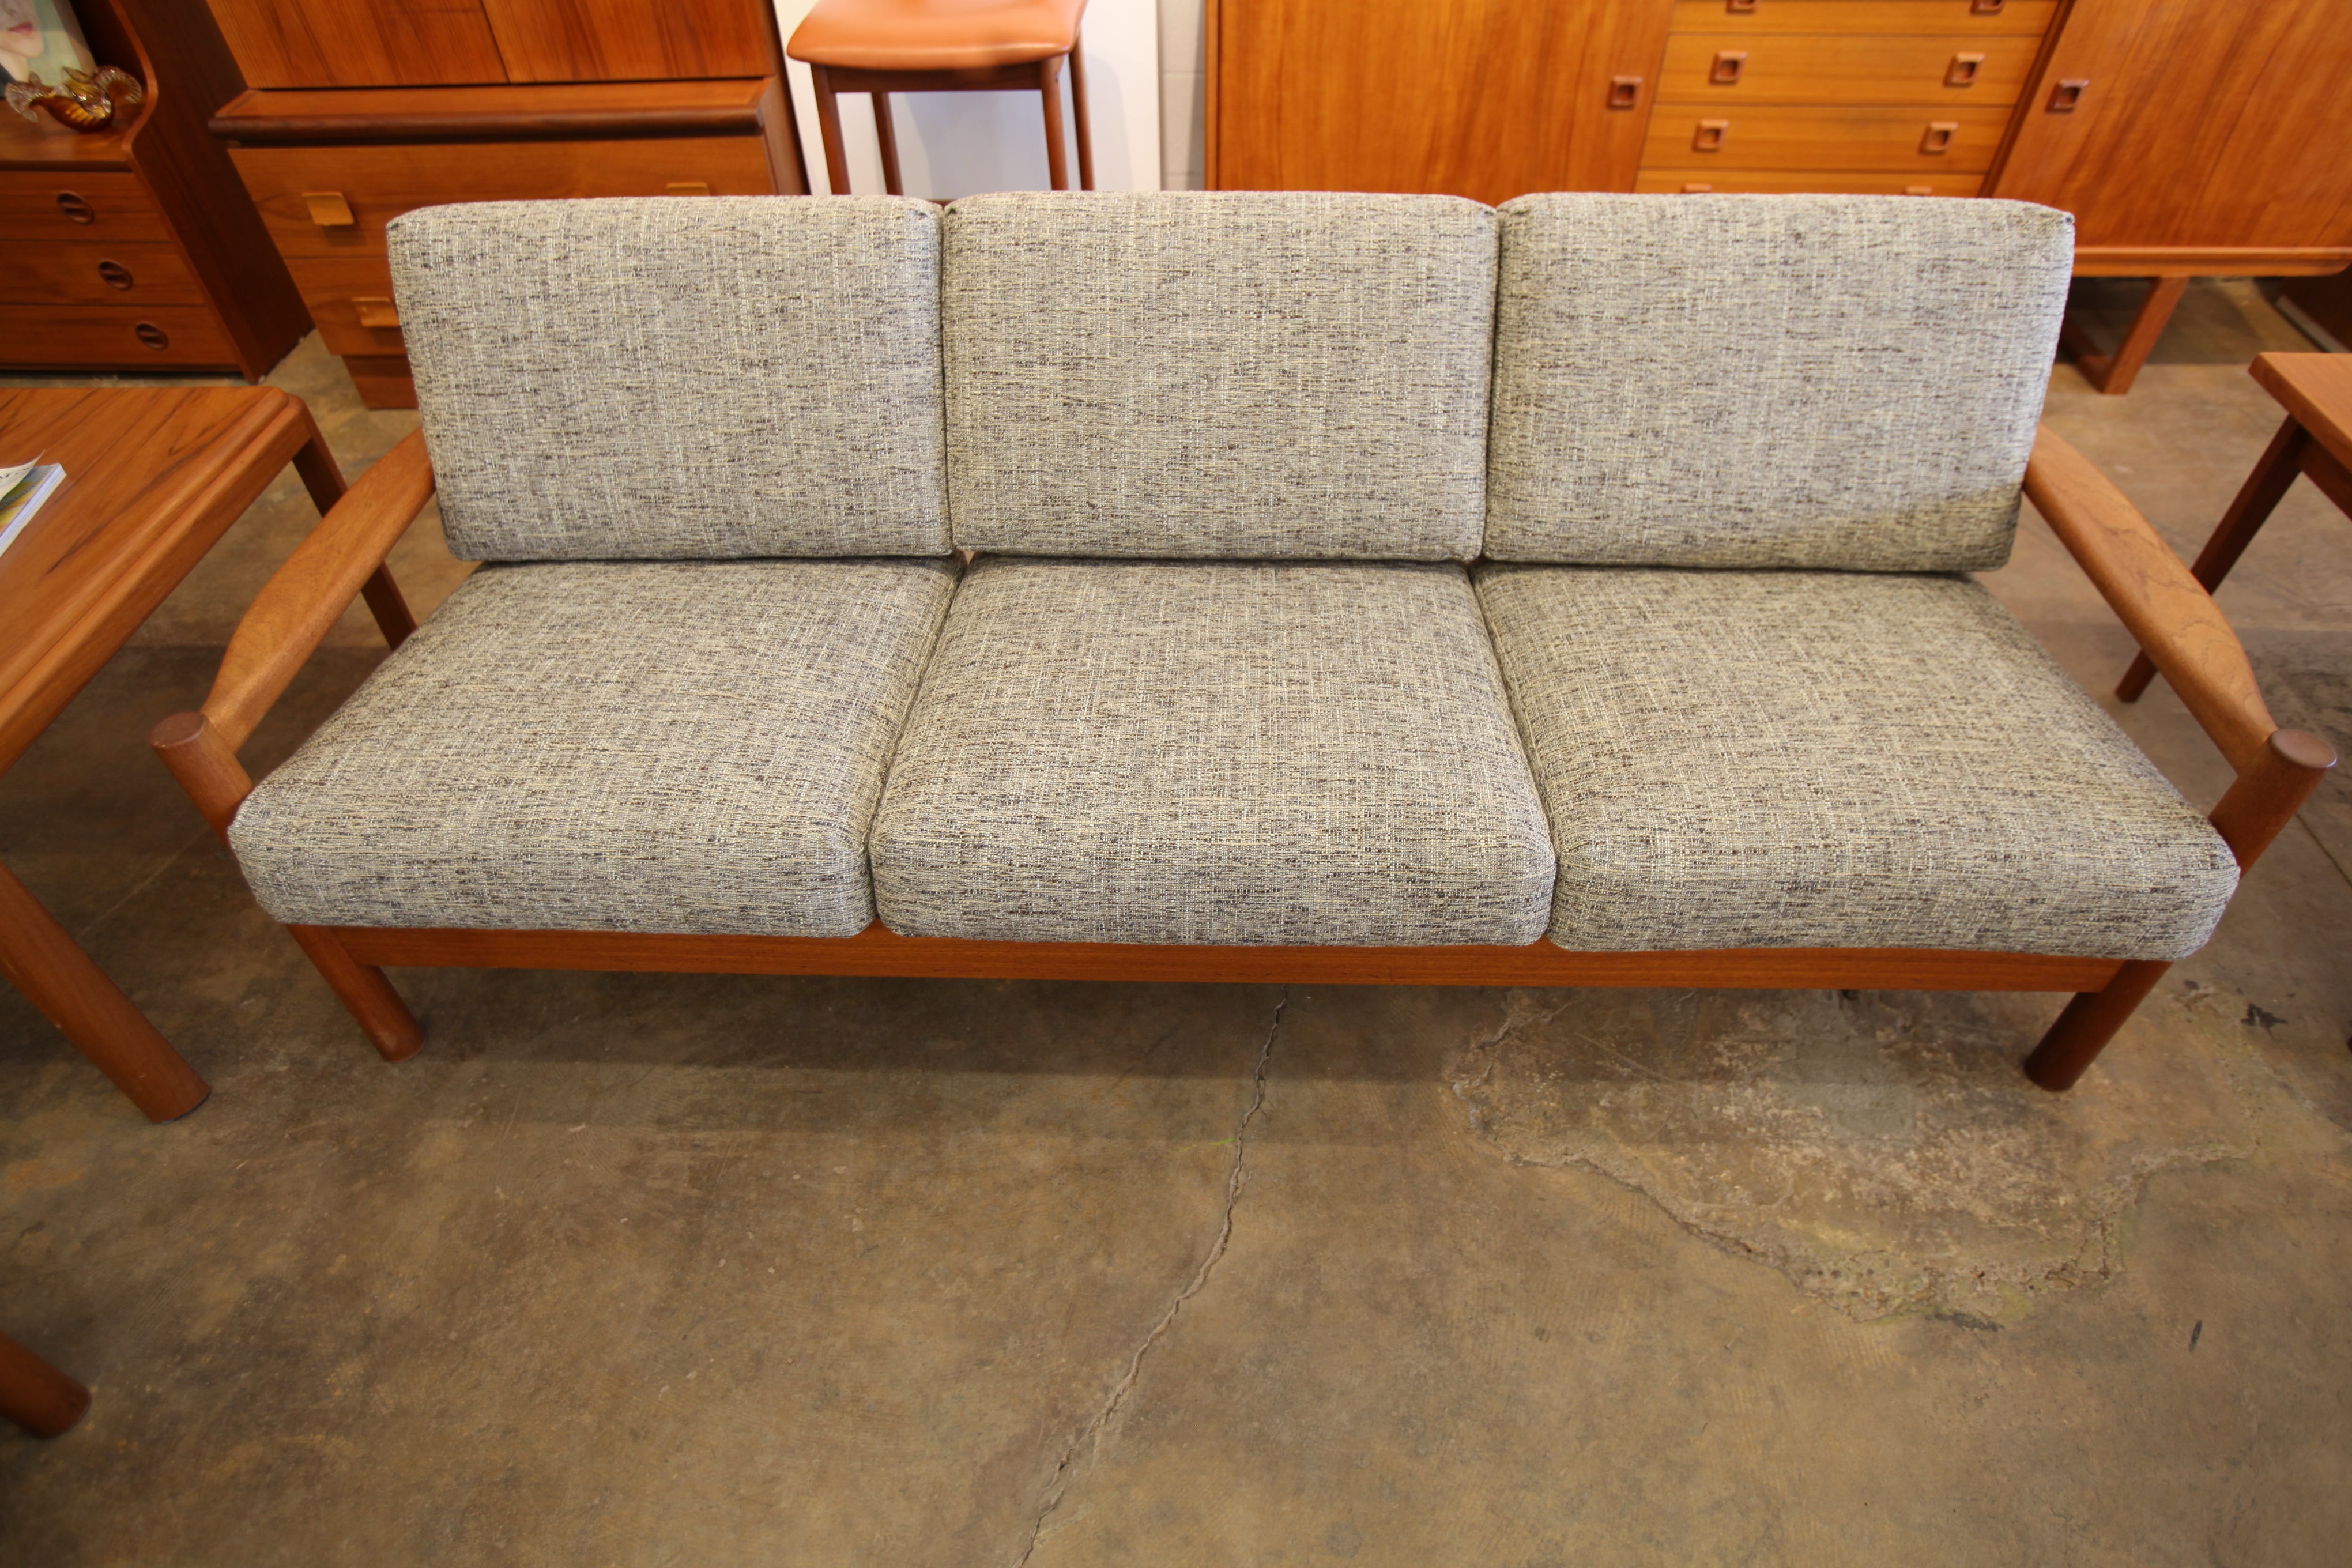 Beautiful Vintage Danish Teak 3 Seater Sofa w/ New Fabric (79.5"W x 29.5"D x 28"H)